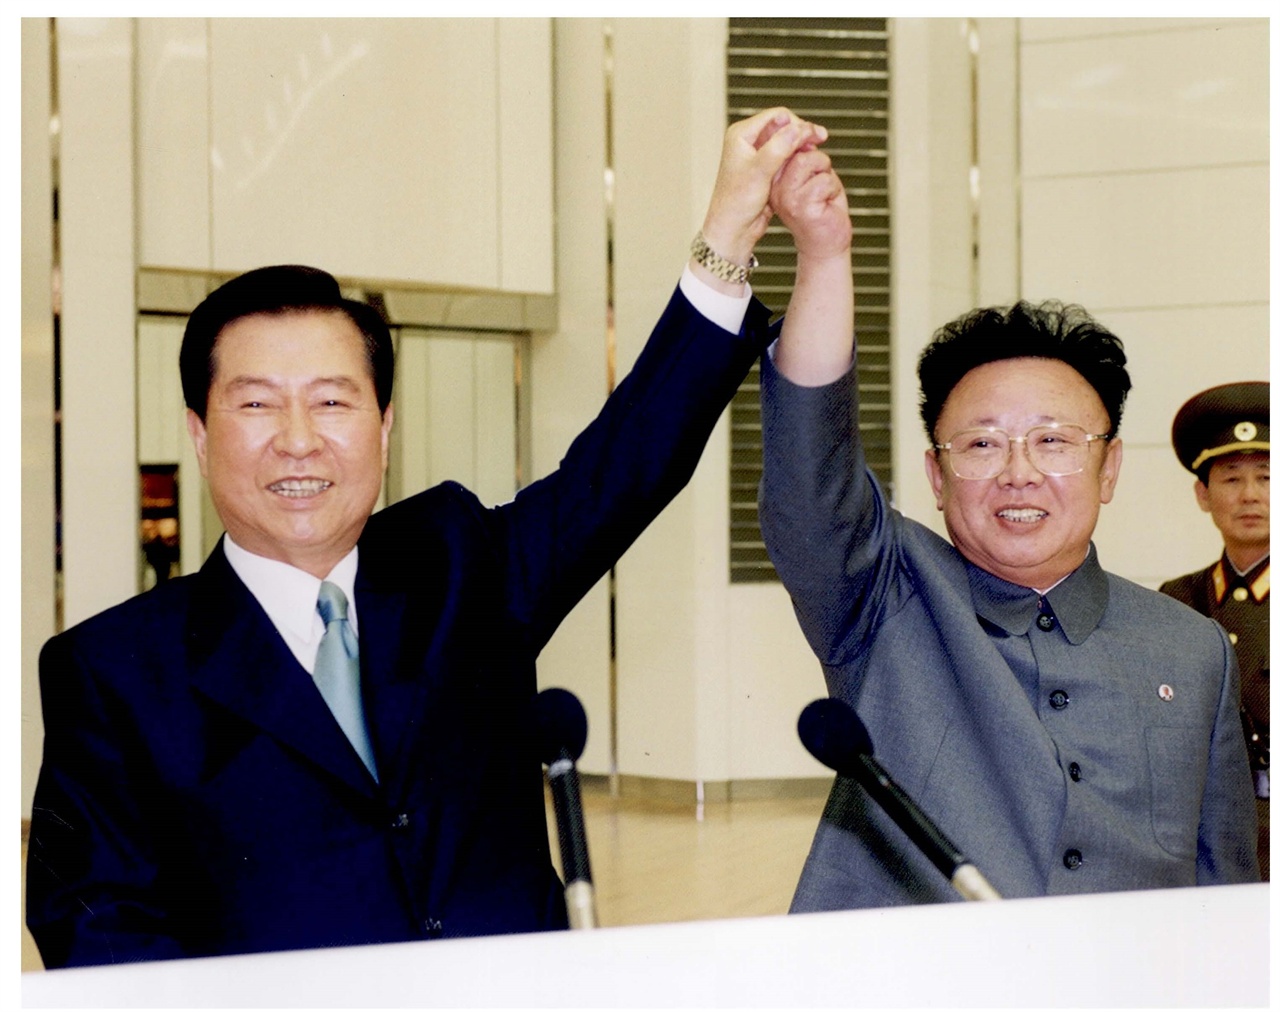 6.15 공동선언 합의를 축하하기 위해 맞잡은 두 손을 올리며 환하게 웃고 있는 김대중 대통령과 김정일 위원장